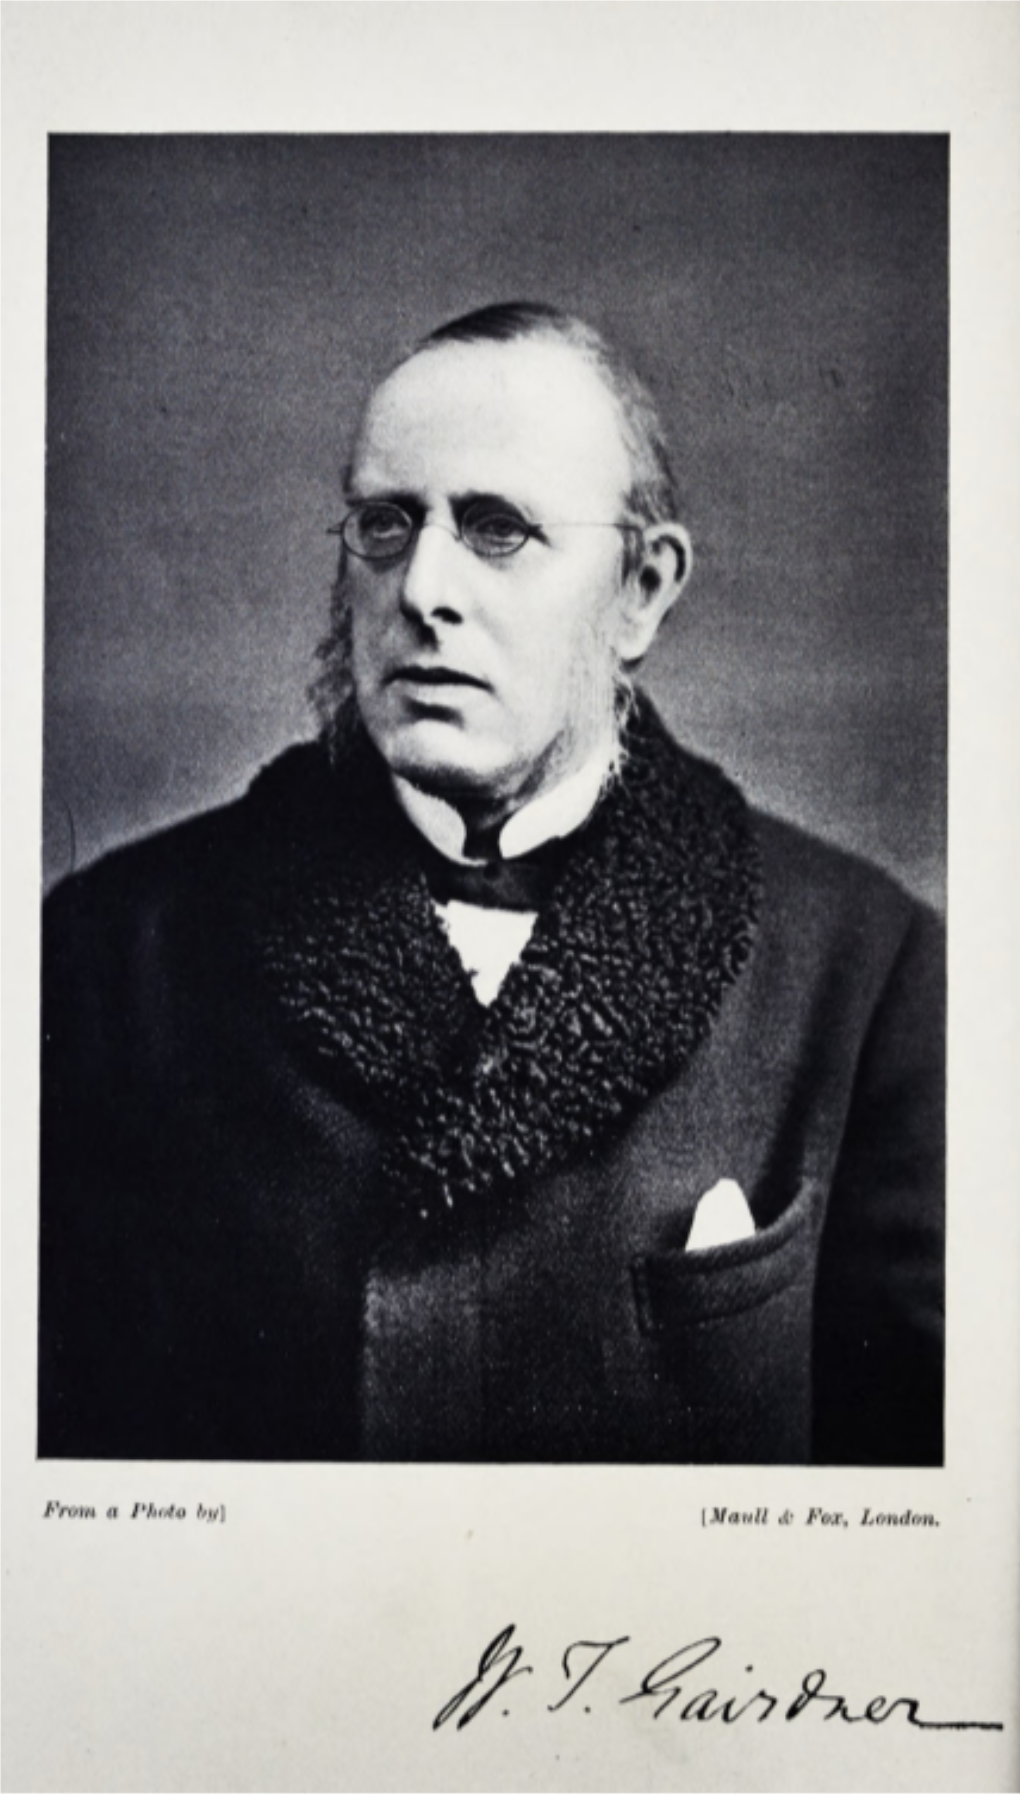 Sir William Tennant Gairdner, K.C.B., M.D., Ll.D., F.R.S